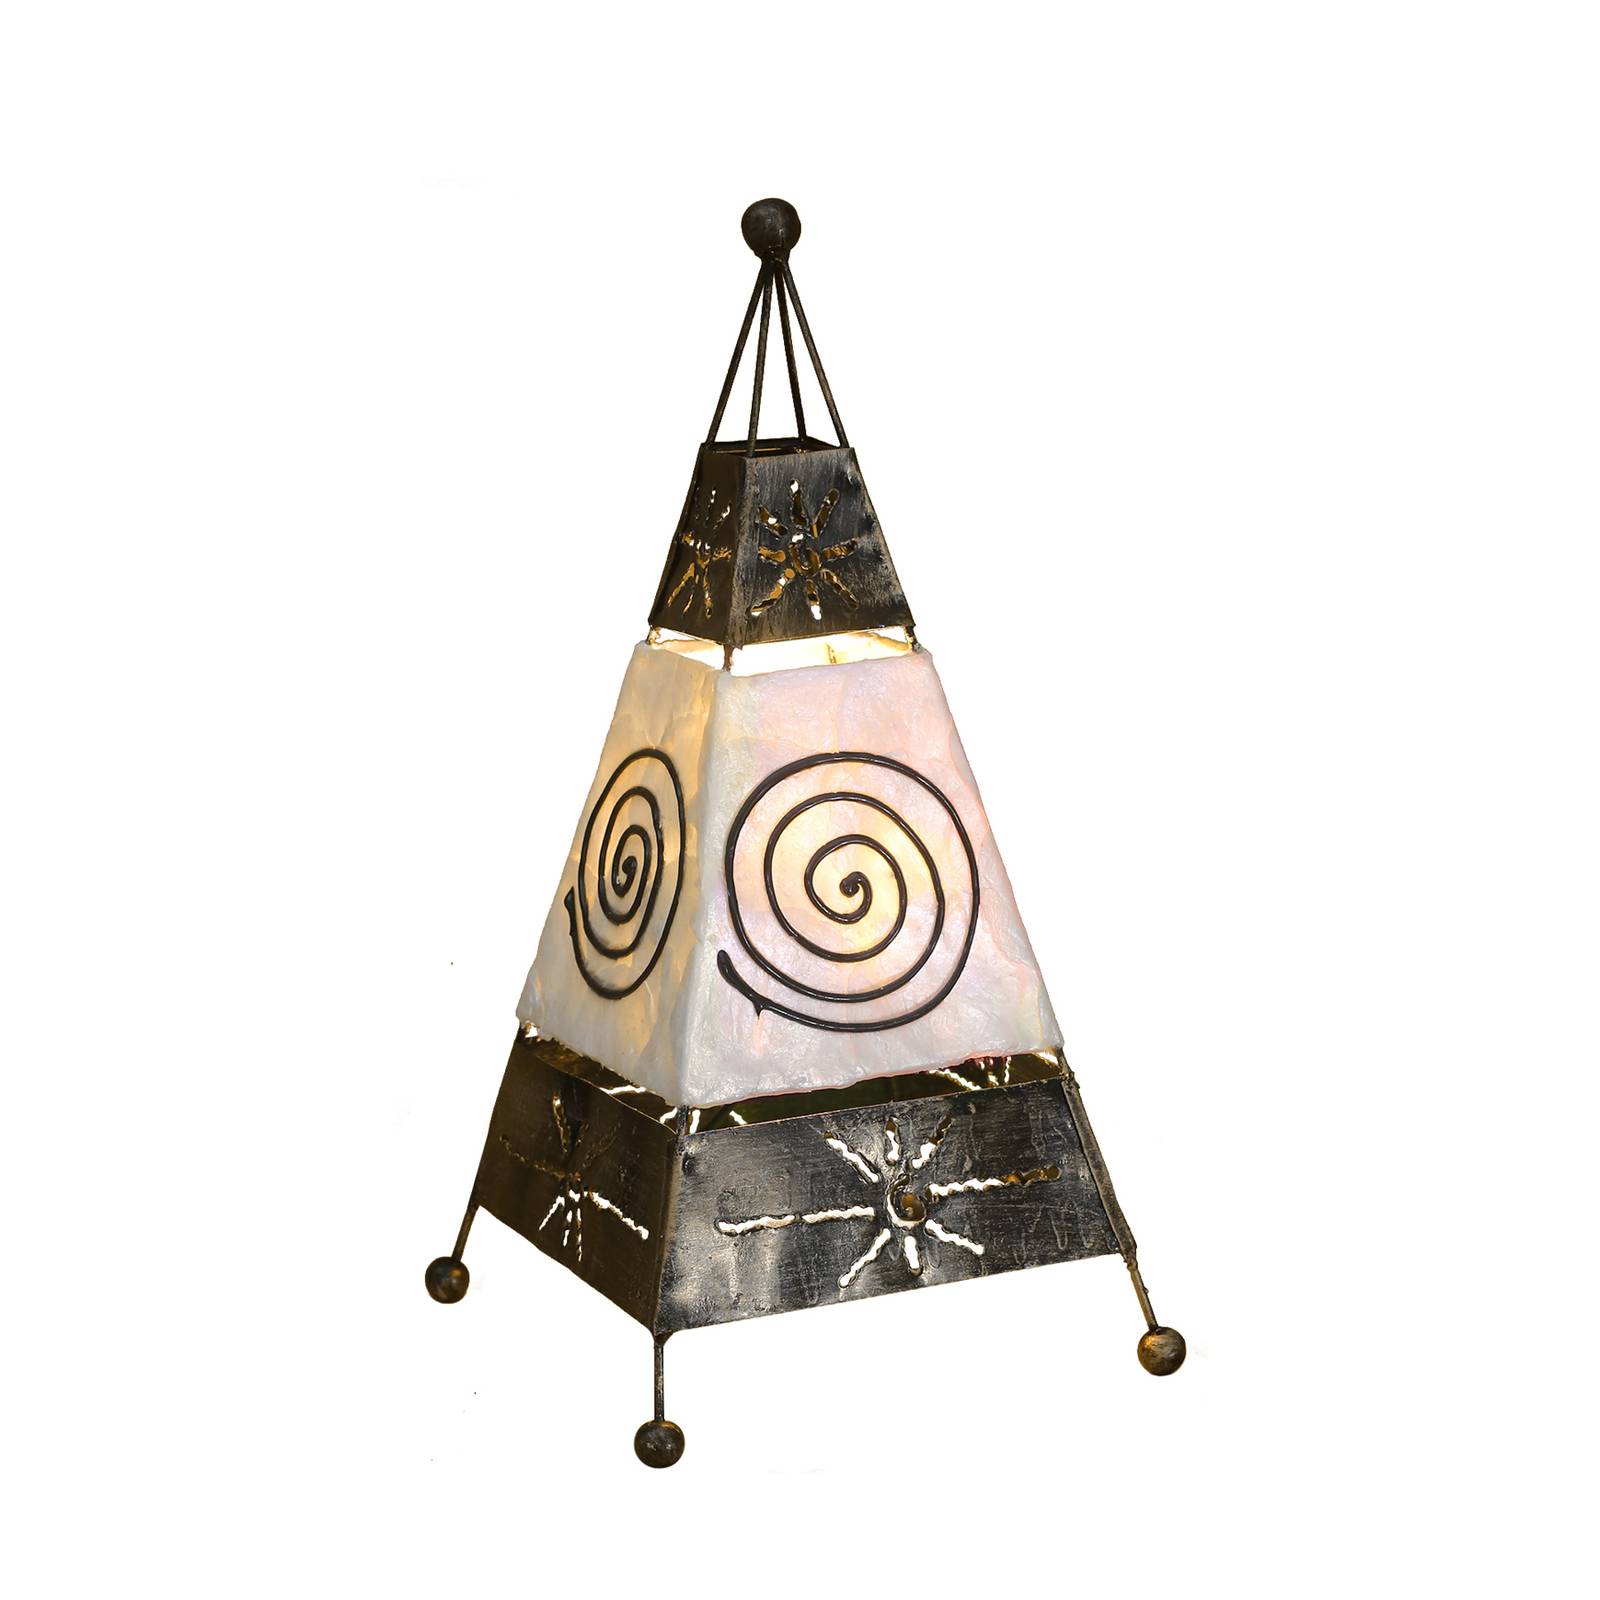 Woru Carlo bordlampe med spiral- og solmotiv